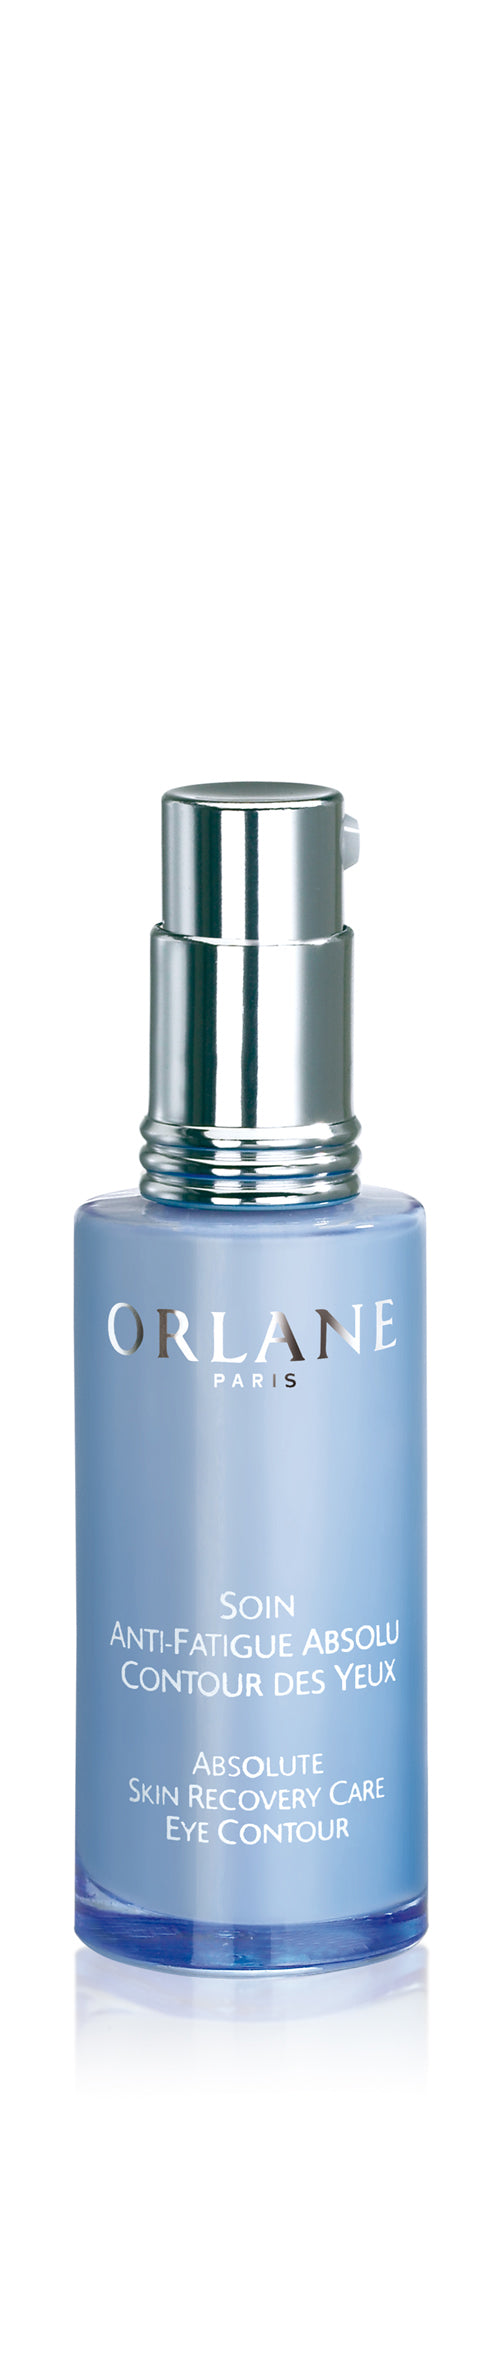 Orlane SAFA Detox Emulsion | BY JOHN